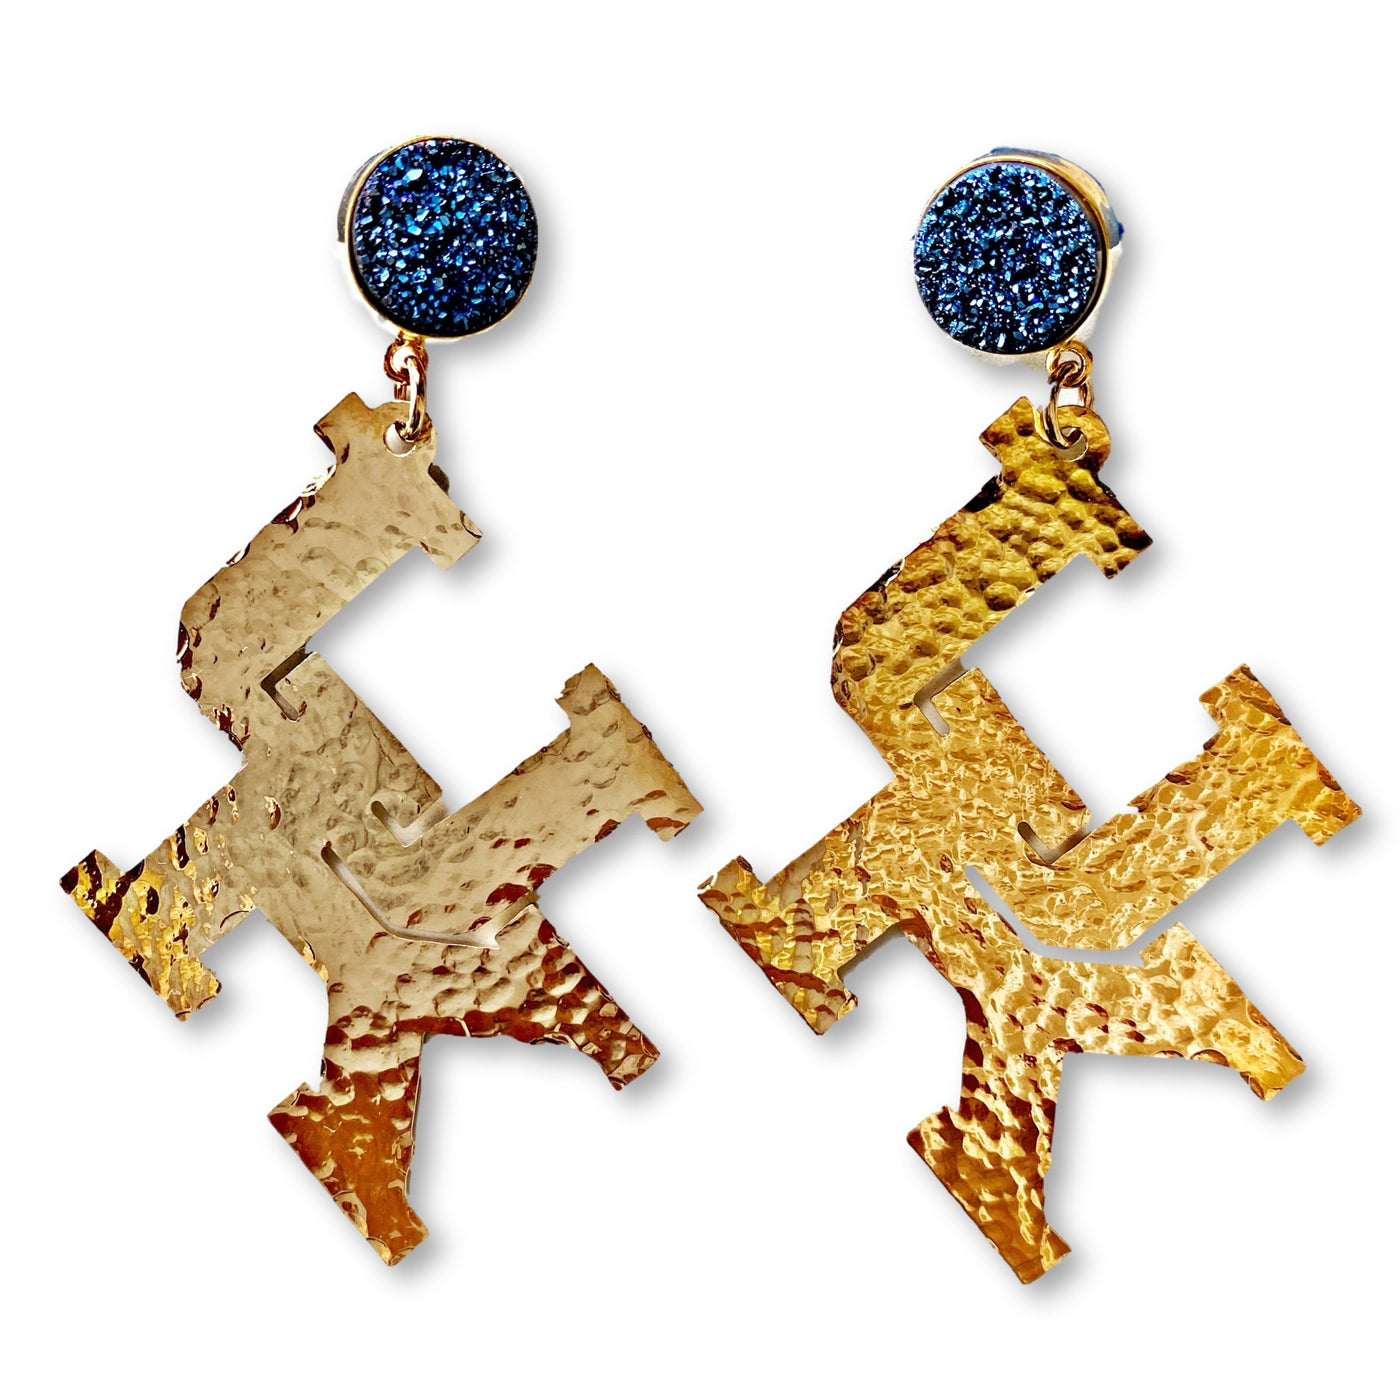 Kentucky Gold Logo Earrings with Blue Druzy